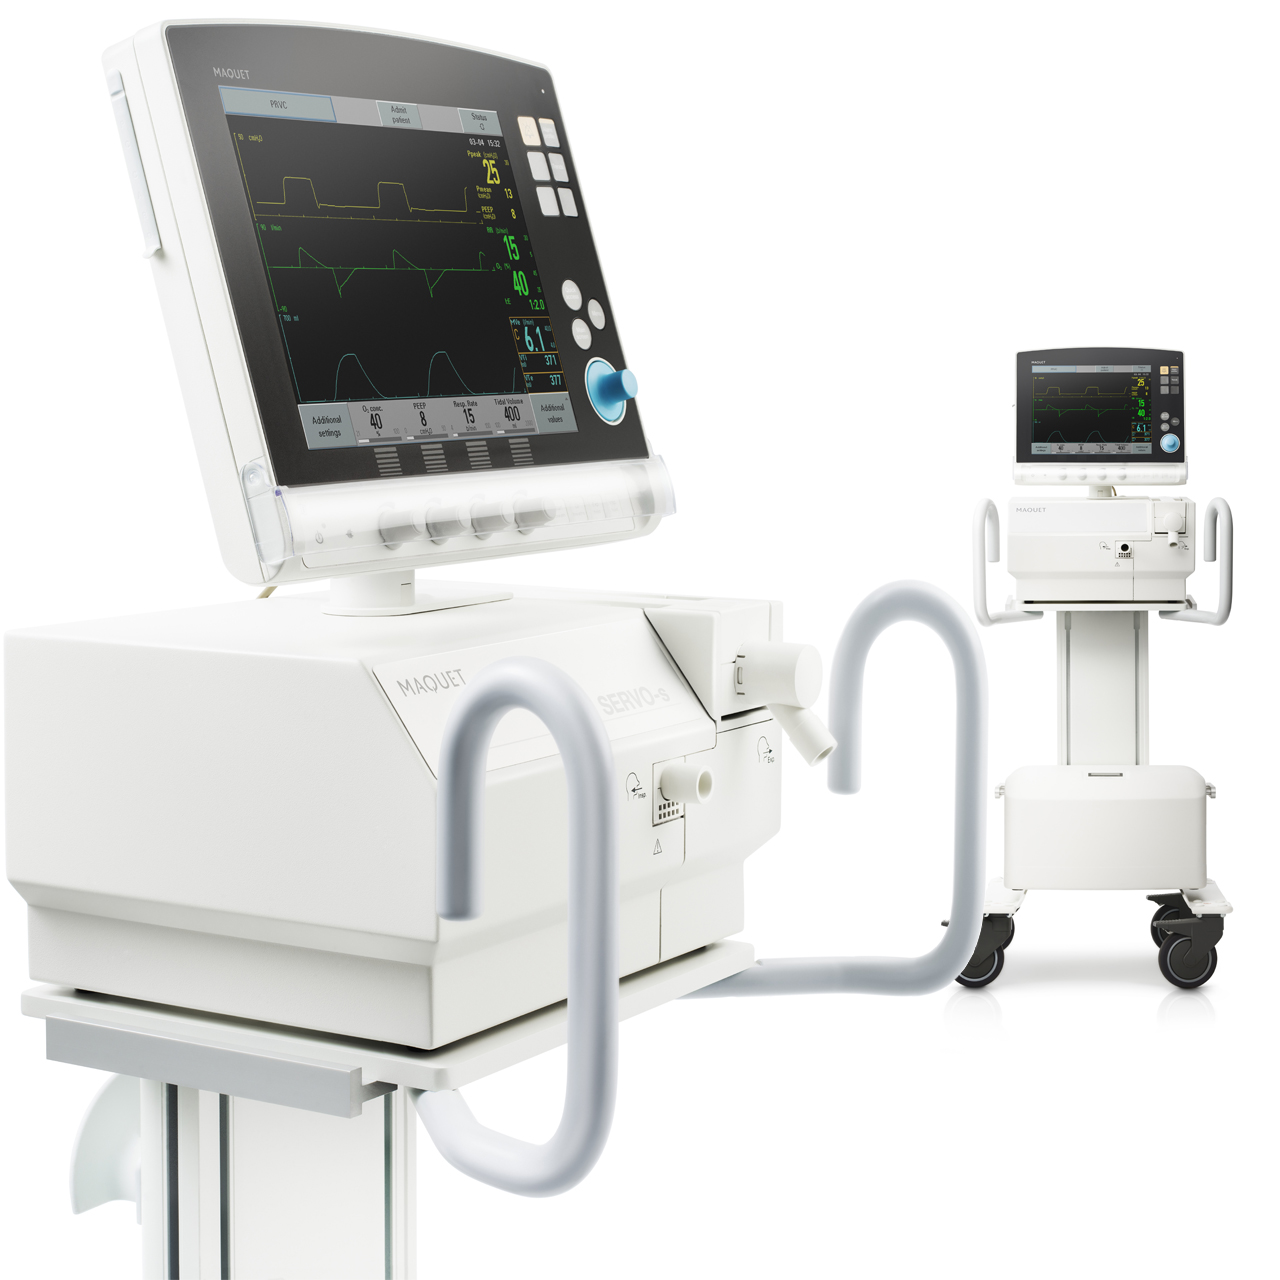 Getinge Servo-s mechanical ventilator screen showing PRVC ventilation mode